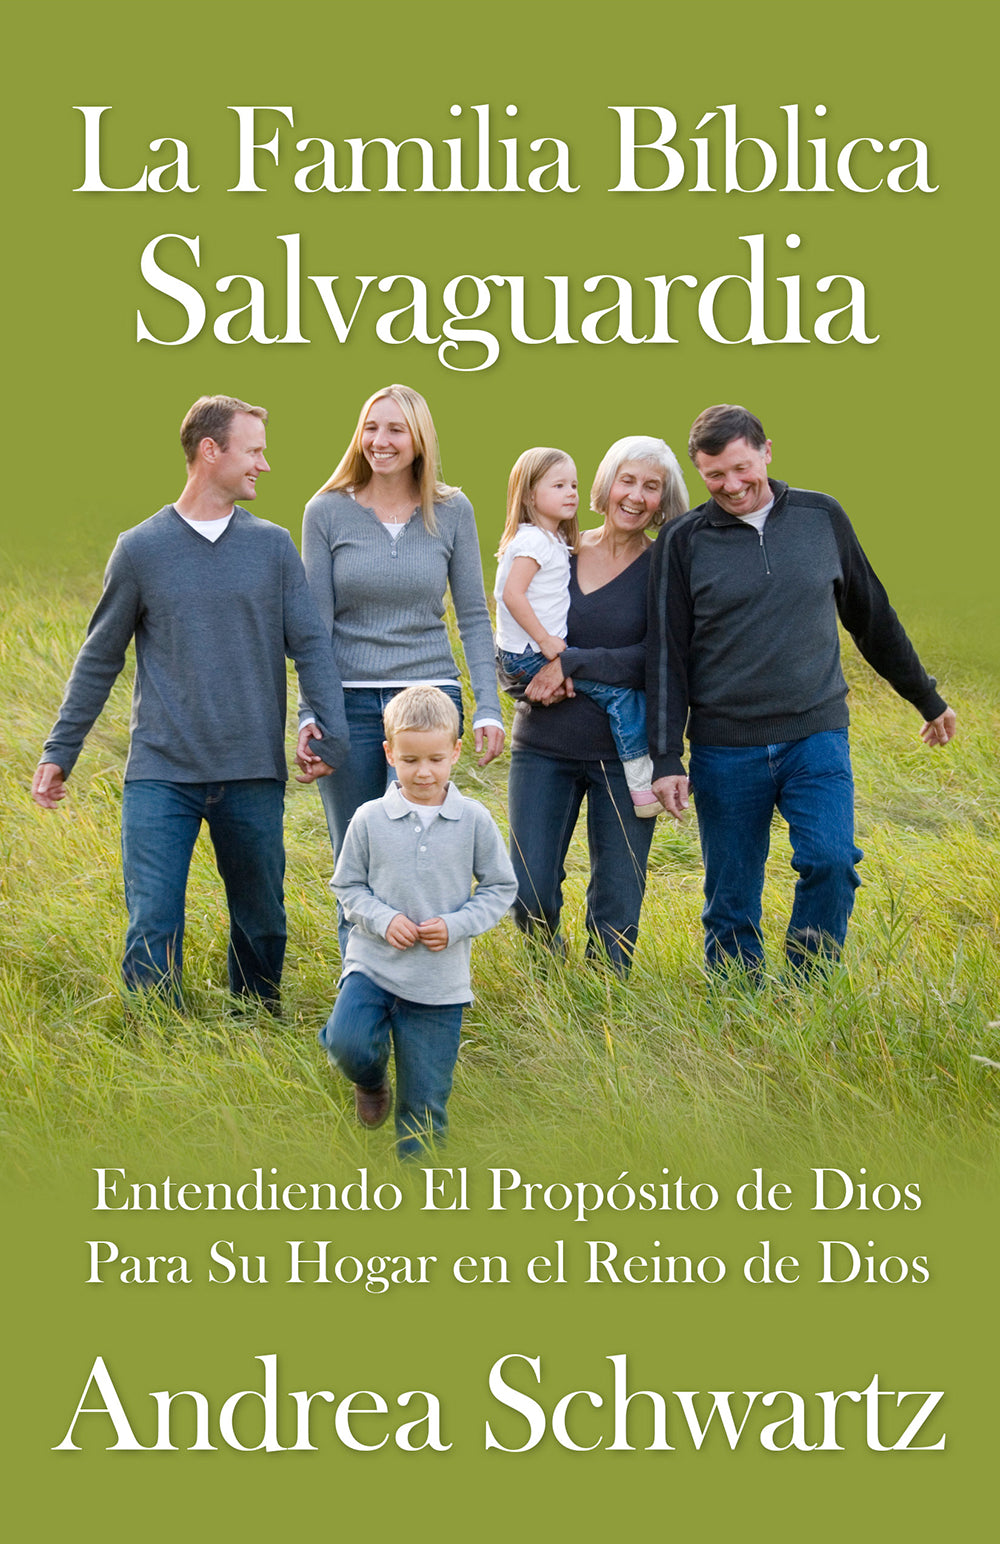 Biblical Trustee Family (La Familia Bíblica Salvaguardia)